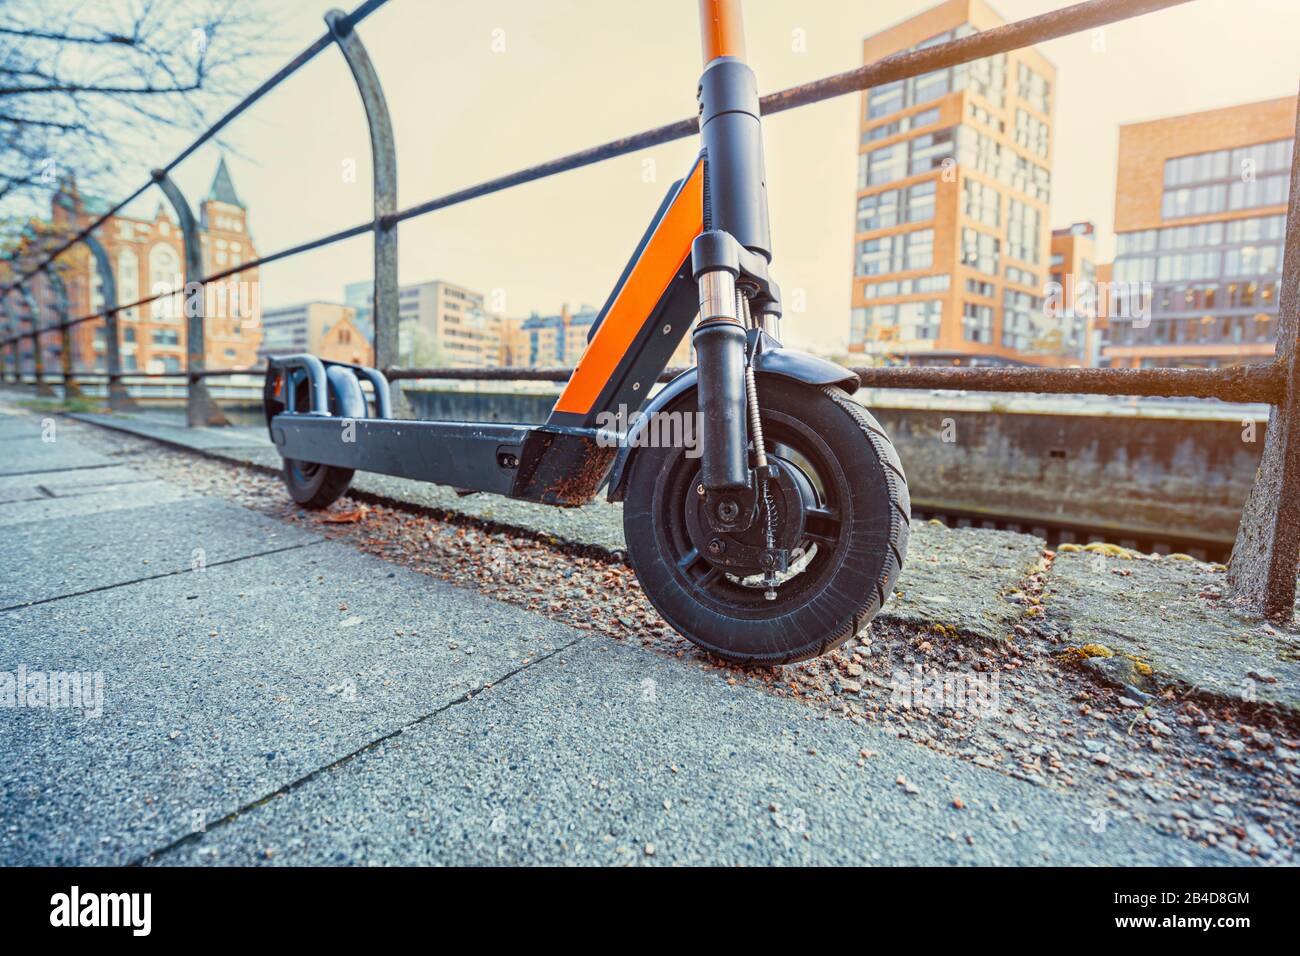 Deutschland, Hamburg, ein E-Roller angelehnt an ein Geländer Stock Photo -  Alamy